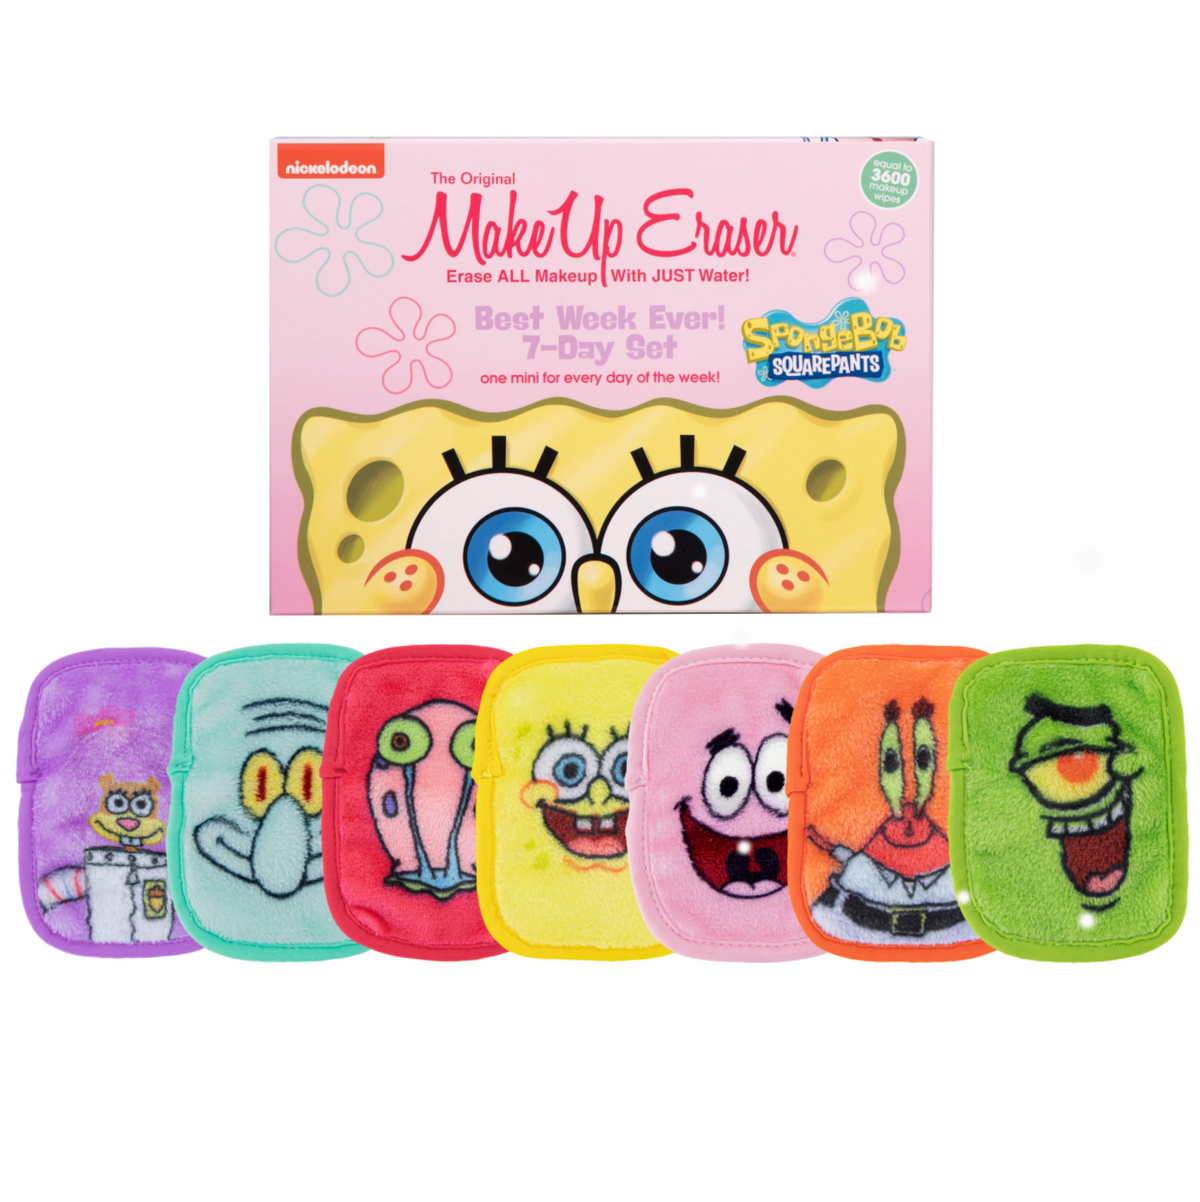 MakeUp Eraser - 7 Day Set - Sponge Bob